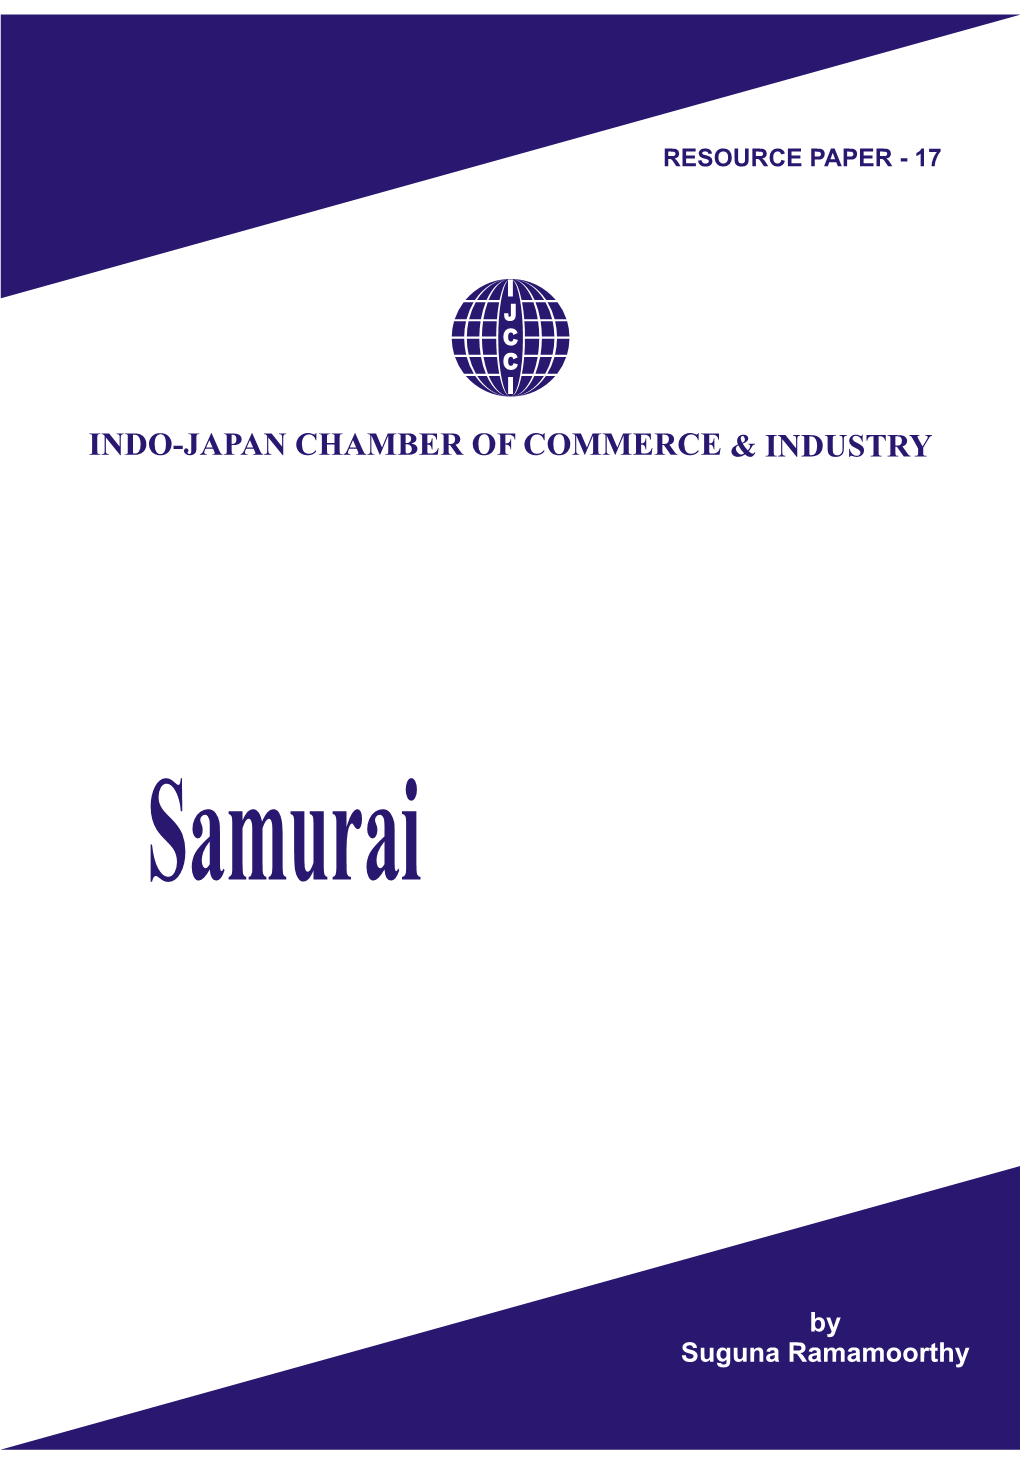 Resource Paper -17, Samurai by Suguna Ramamoorthy